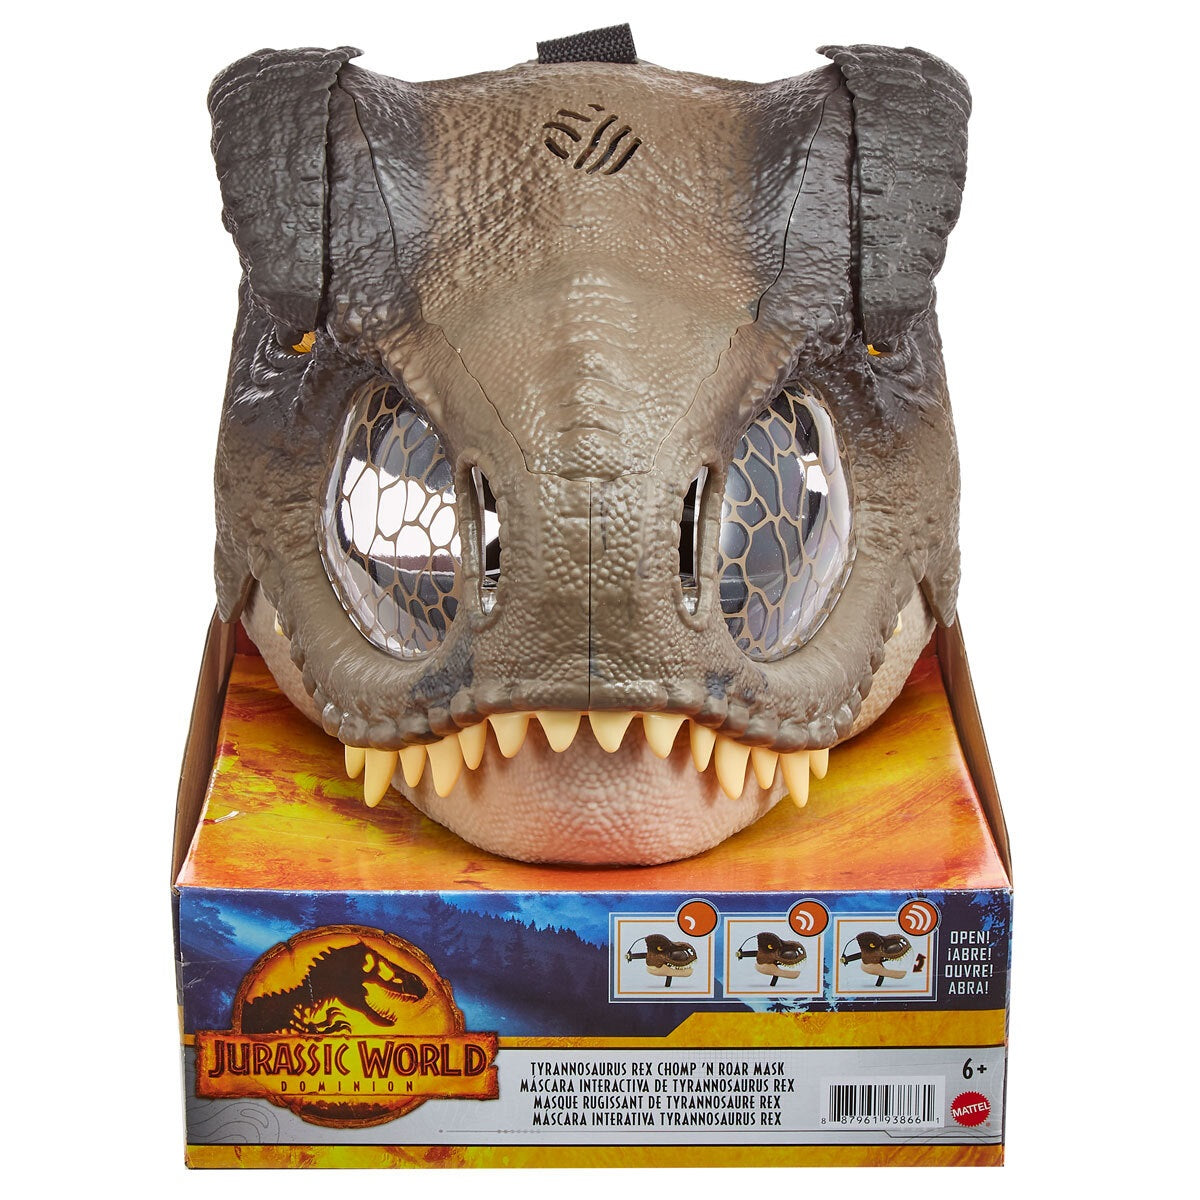 Jurassic World Dominion Chomp n Roar T-Rex Dress Up Mask